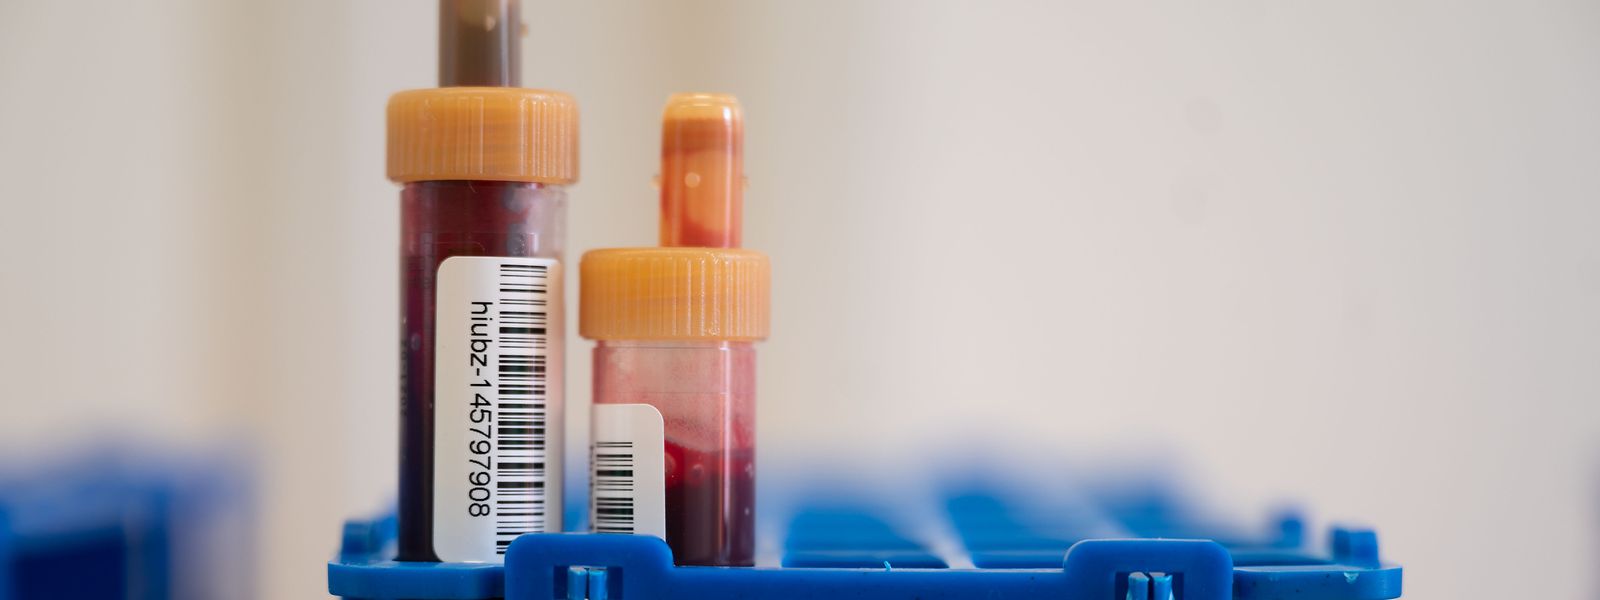 Blutproben von Covid-19-Patienten in einem Testzentrum.